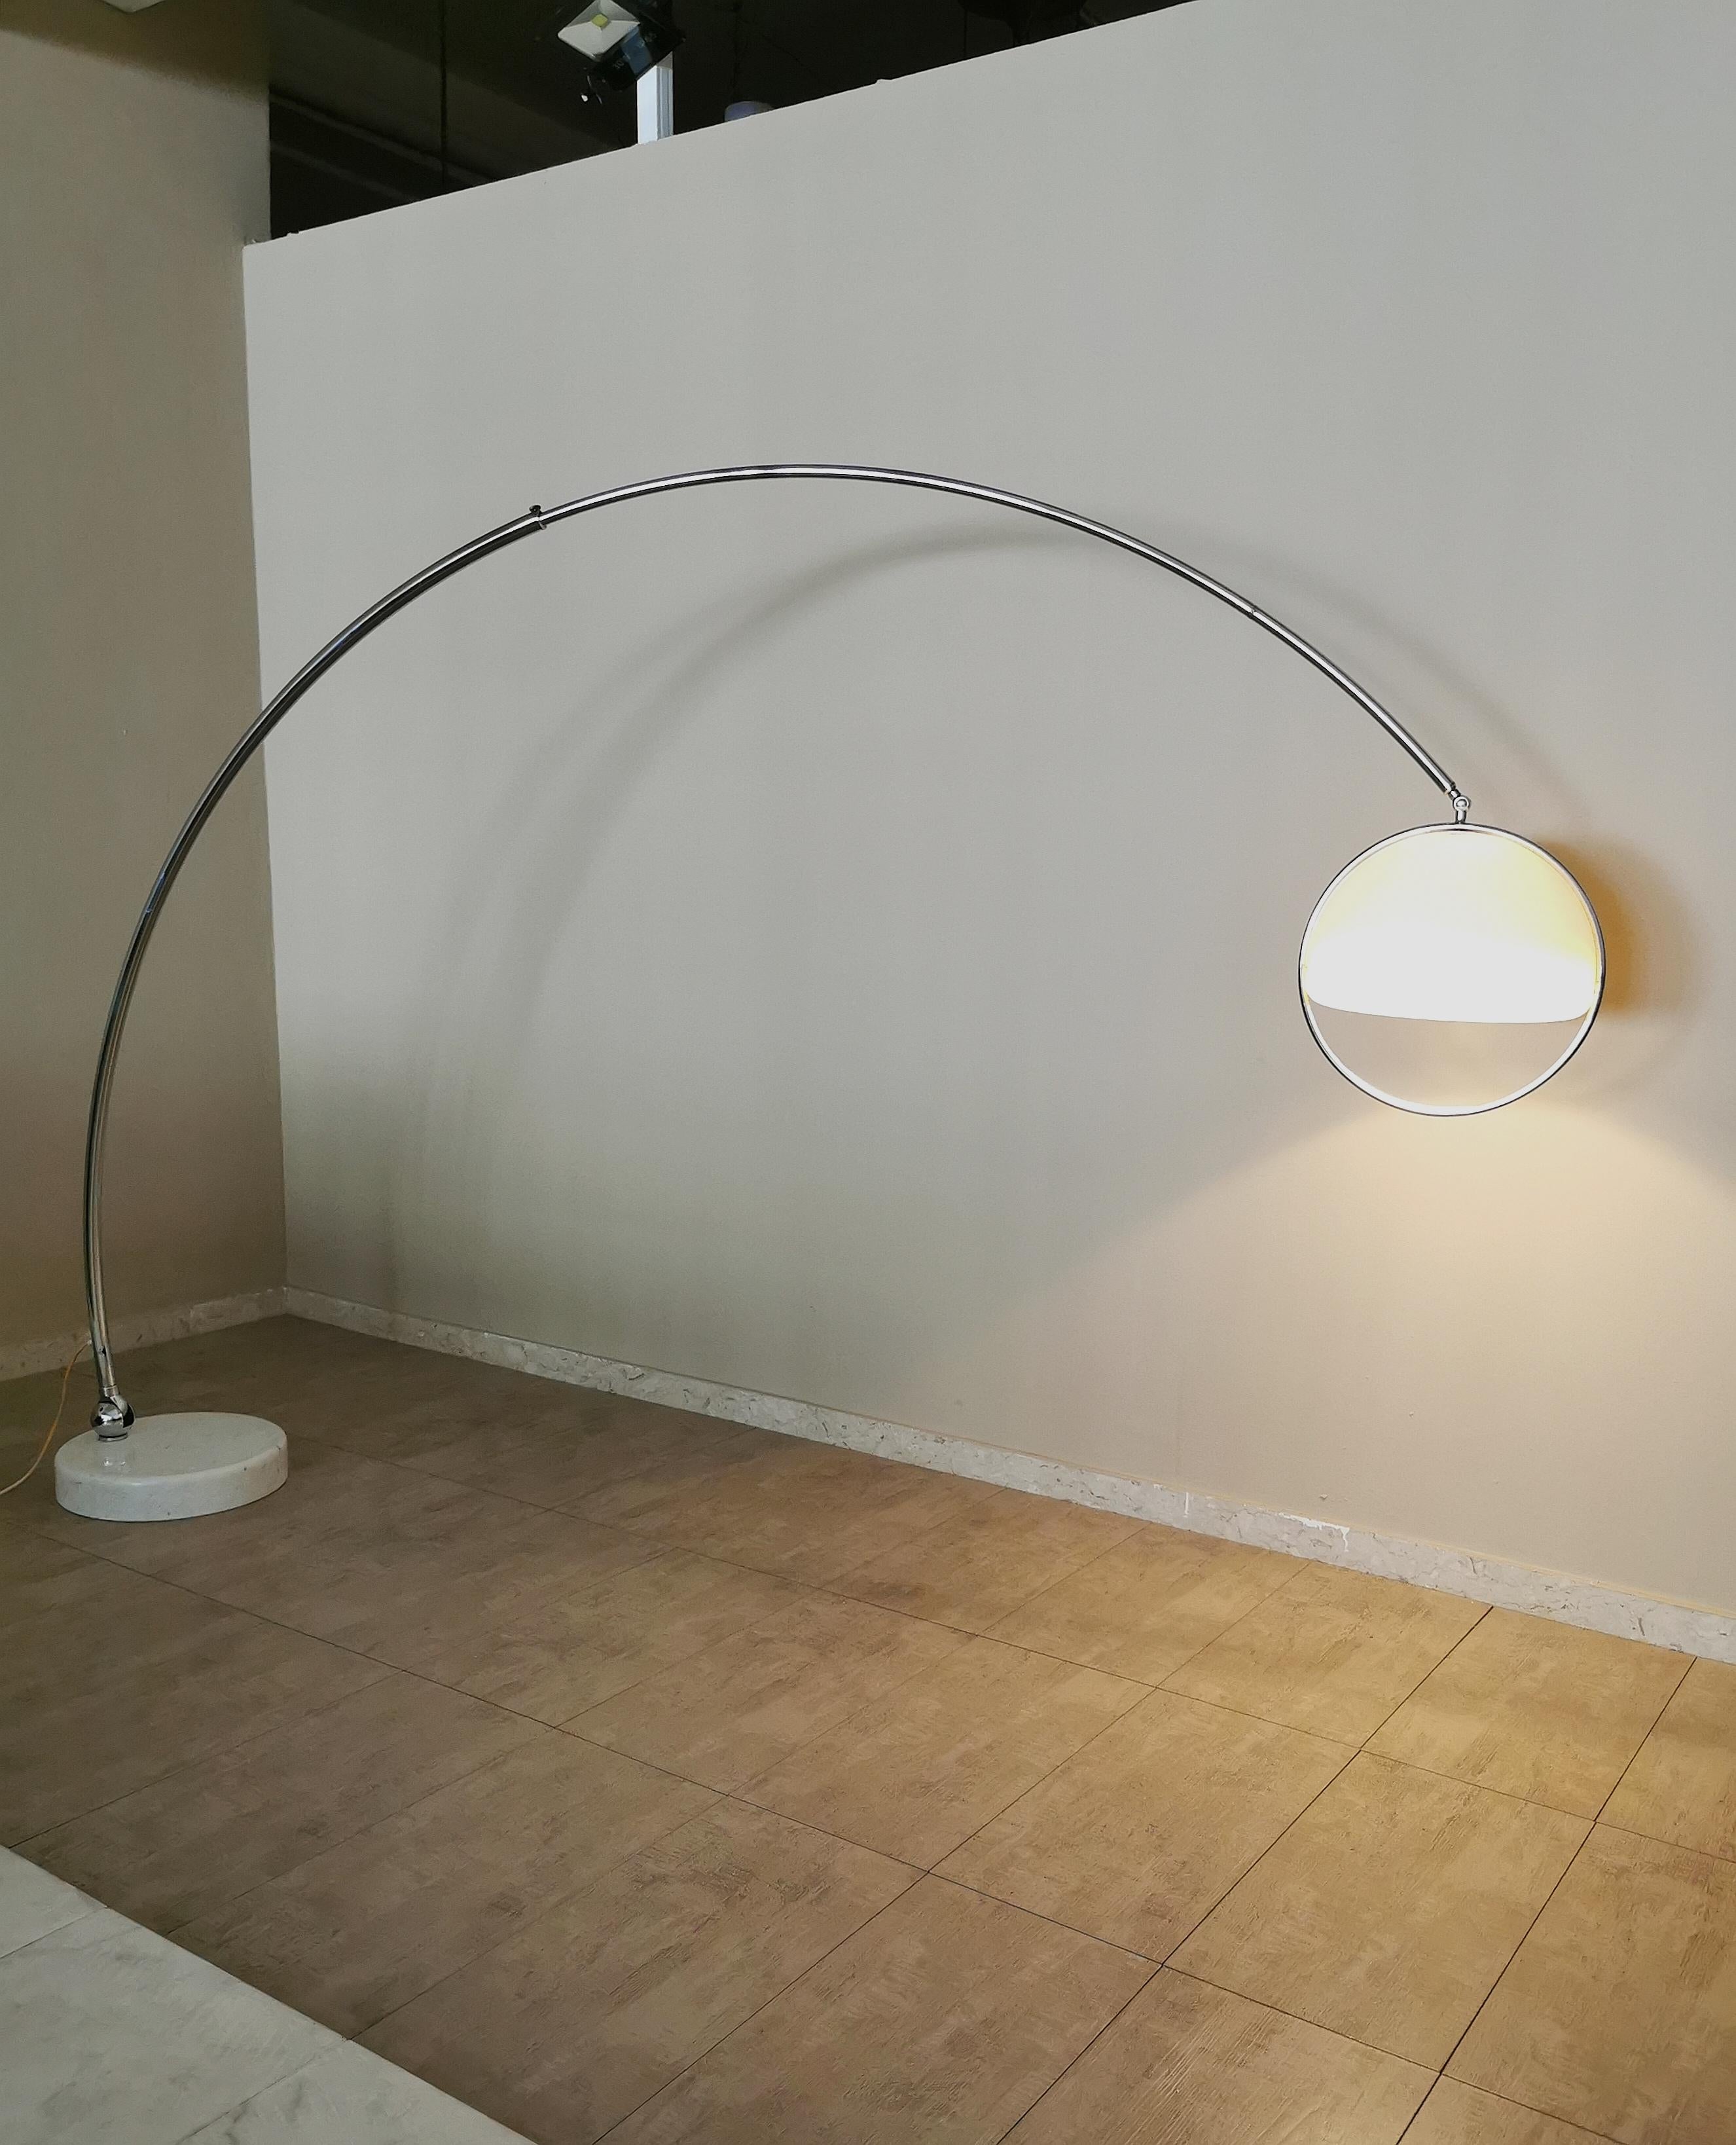  Seltene und großformatige Bogen-Stehleuchte des italienischen Designers Goffredo Reggiani. Die Leuchte hat einen runden Sockel aus weißem Marmor mit einem Loch für die Aufnahme der drehbaren und ausziehbaren verchromten Metallstange. Sie endet mit